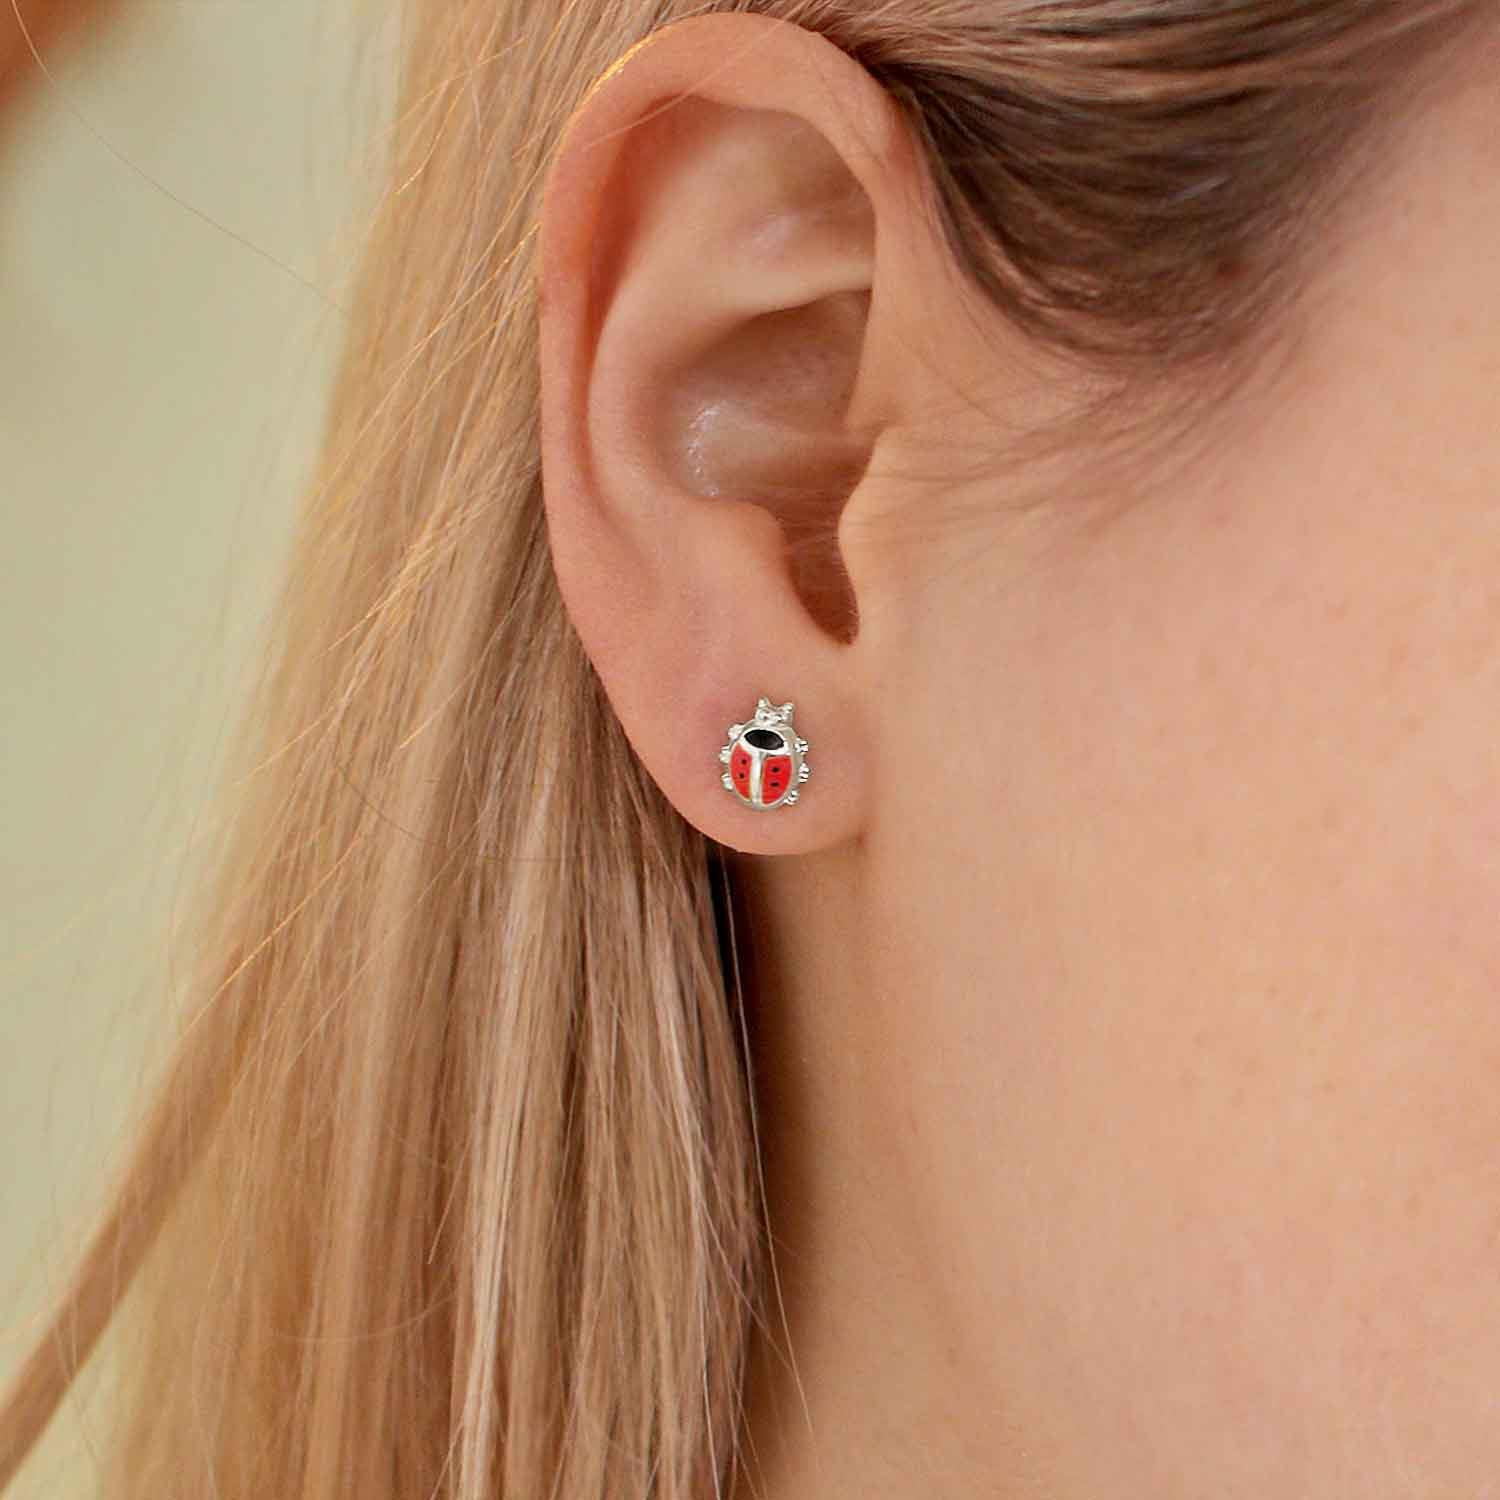 Marienkäfer Ohrringe als Stecker Käfer mit Füßchen 6 mm rot schwarz glänzend lackiert Echt Silber 925